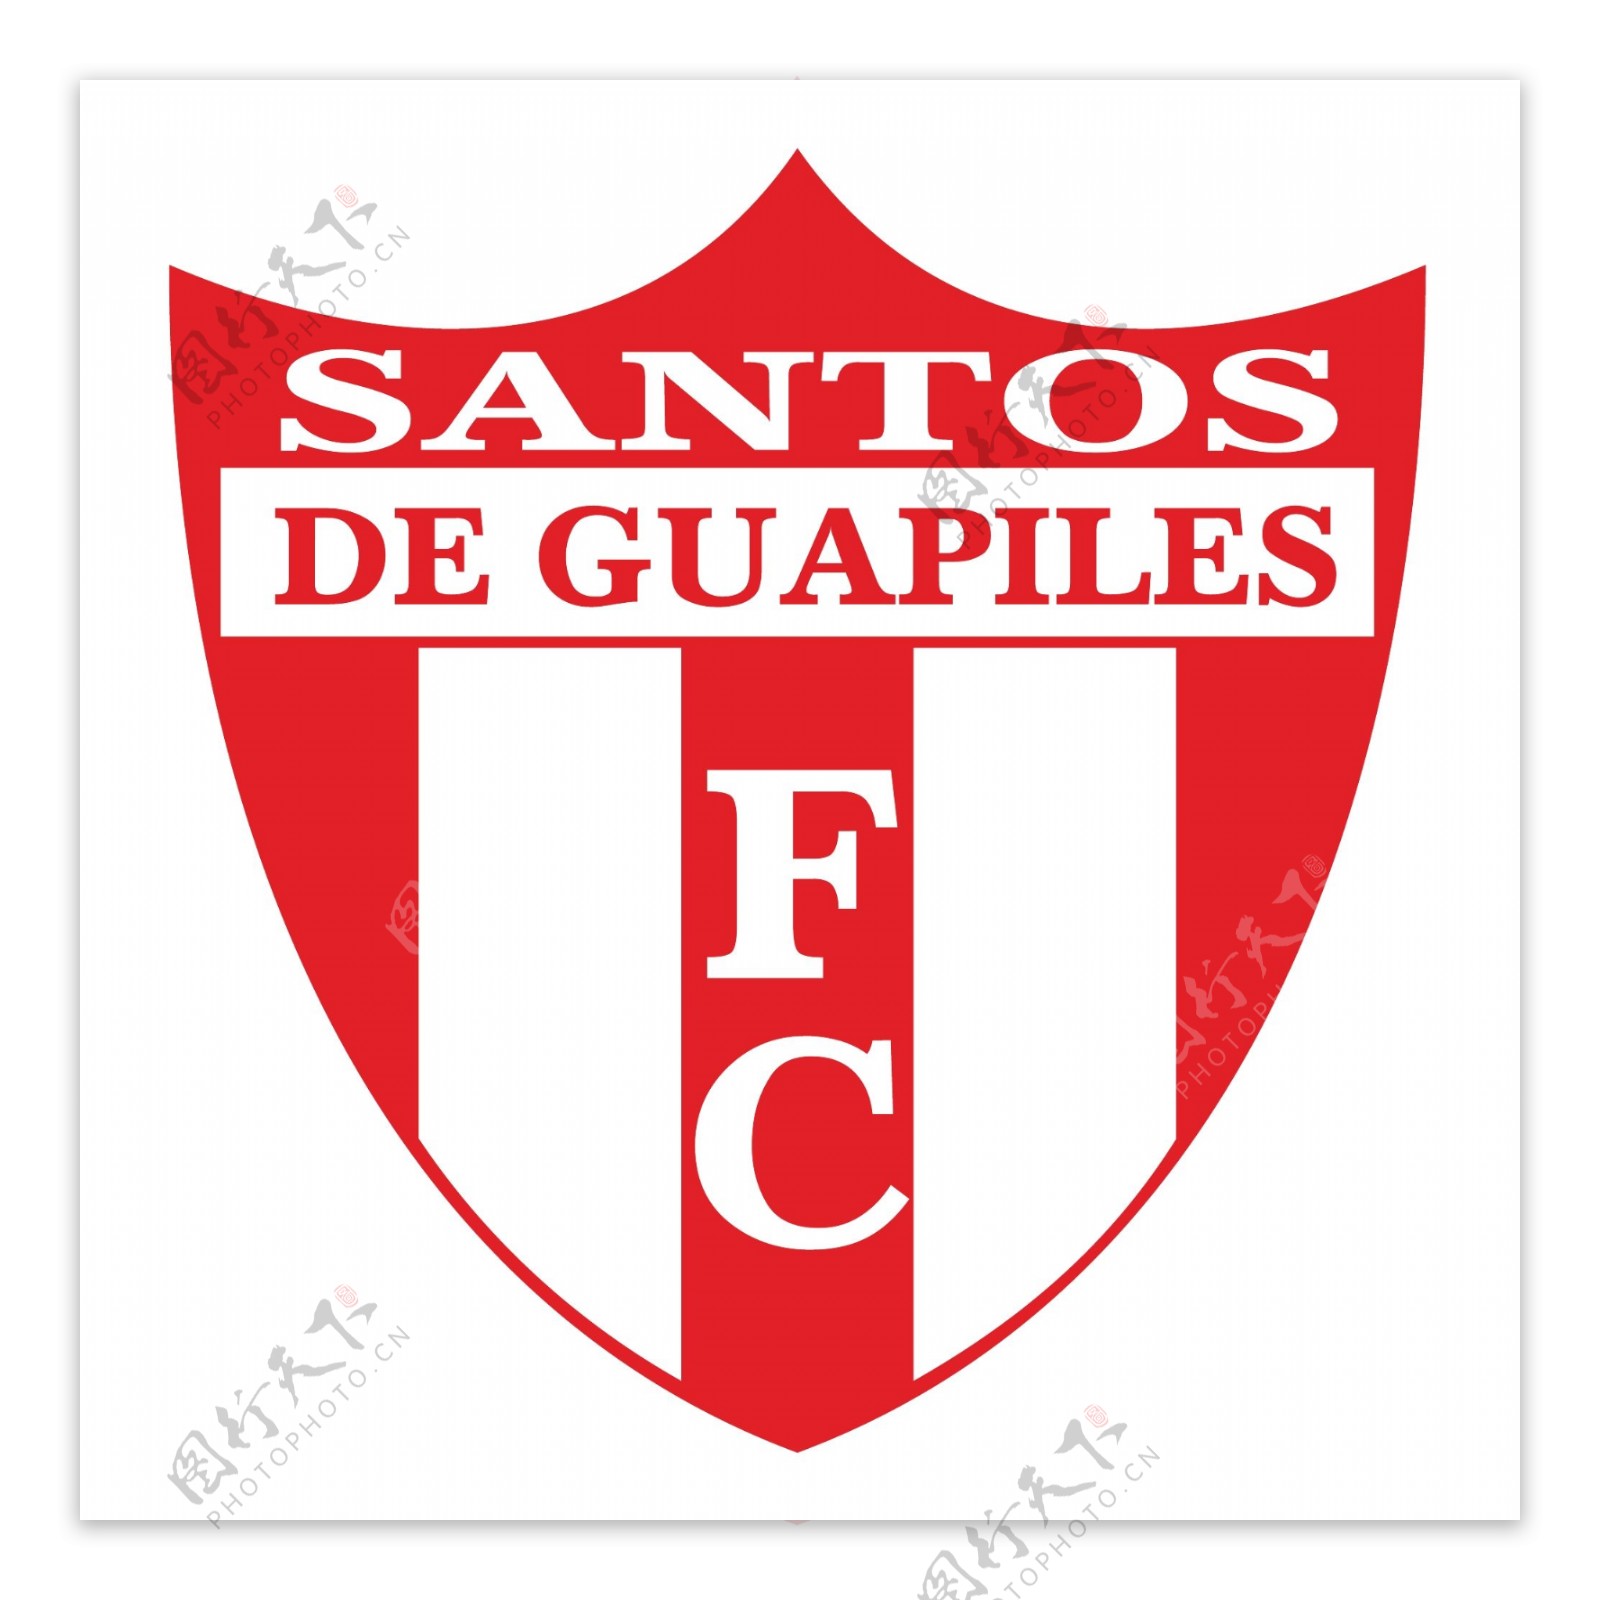 桑托斯足球俱乐部去瓜皮莱斯